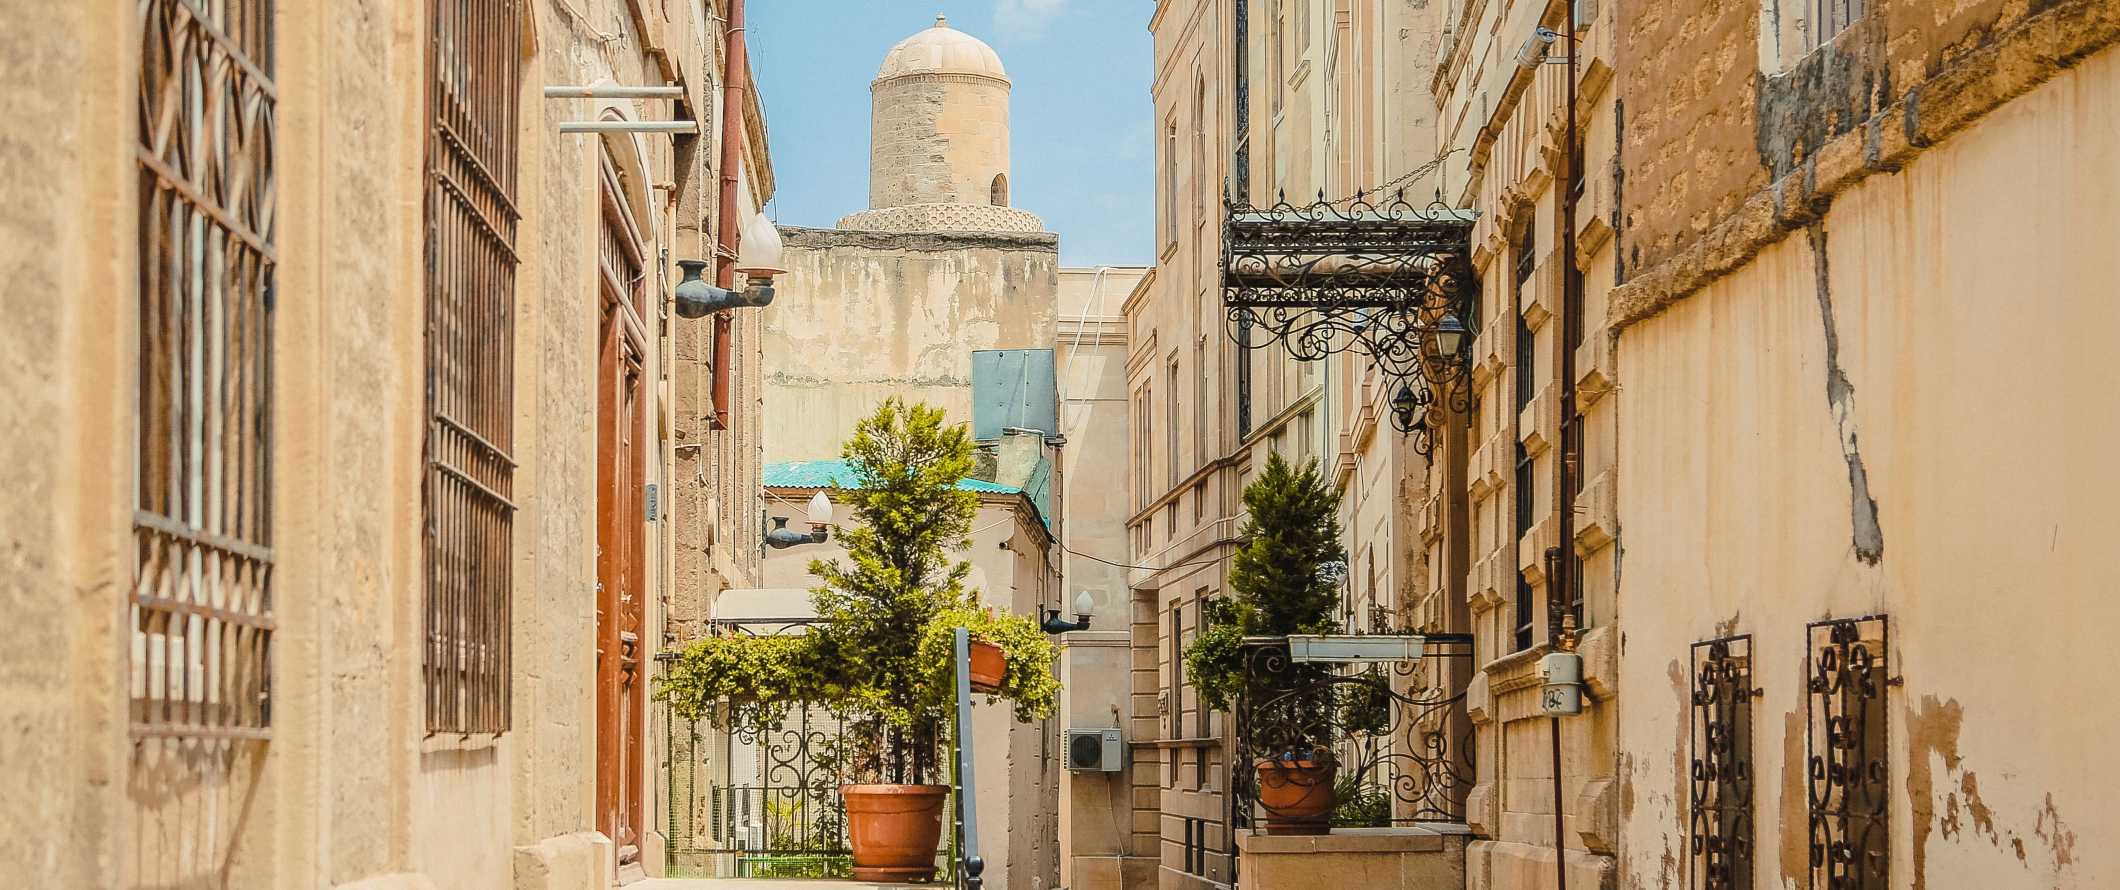 Paisagem de rua com edifícios bege históricos e uma torre de cúpula ao fundo em um dia ensolarado em Baku, Azerbaijão